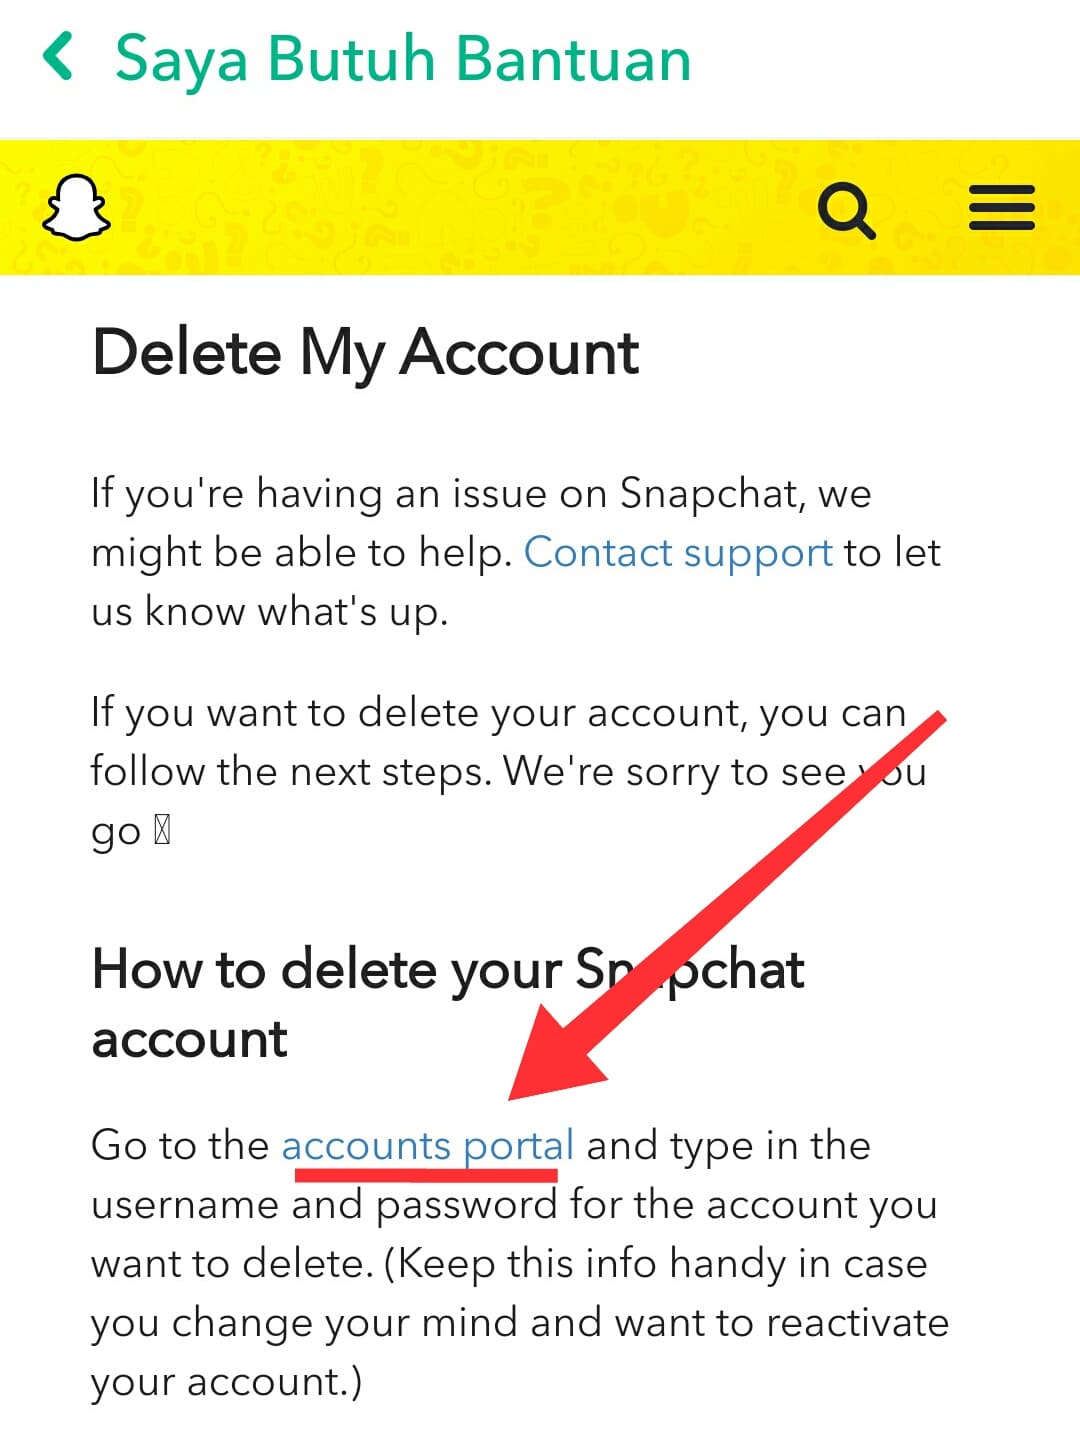 Cara menghapus akun snapchat permanen di android